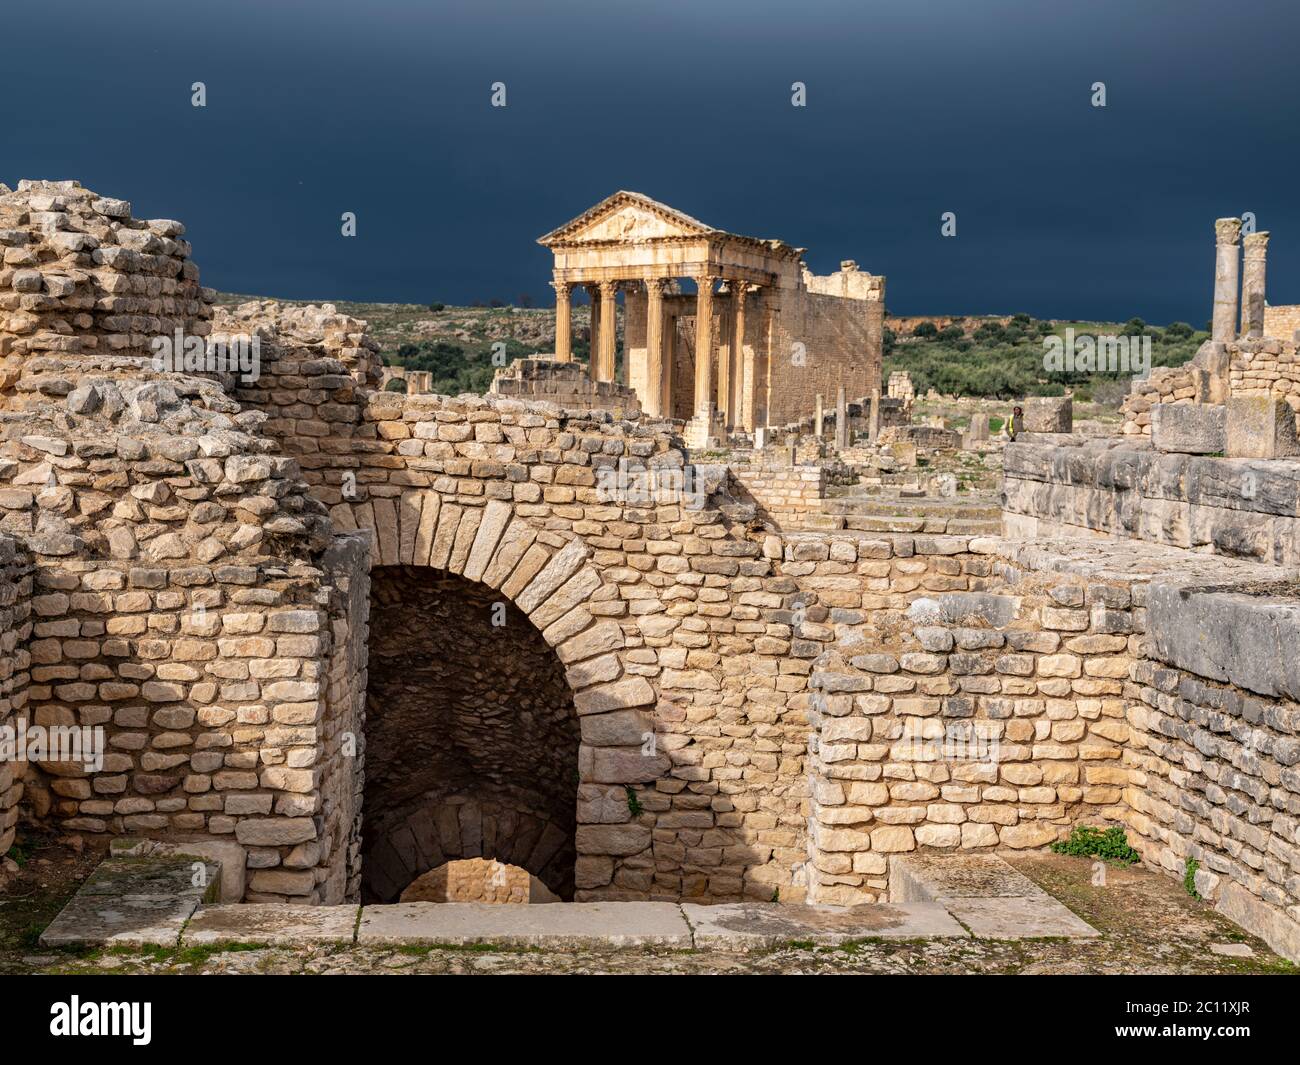 L'ancien site archéologique romain de Dougga (Thugga), Tunisie avec une vue spectaculaire sur le temple principal avant une tempête Banque D'Images